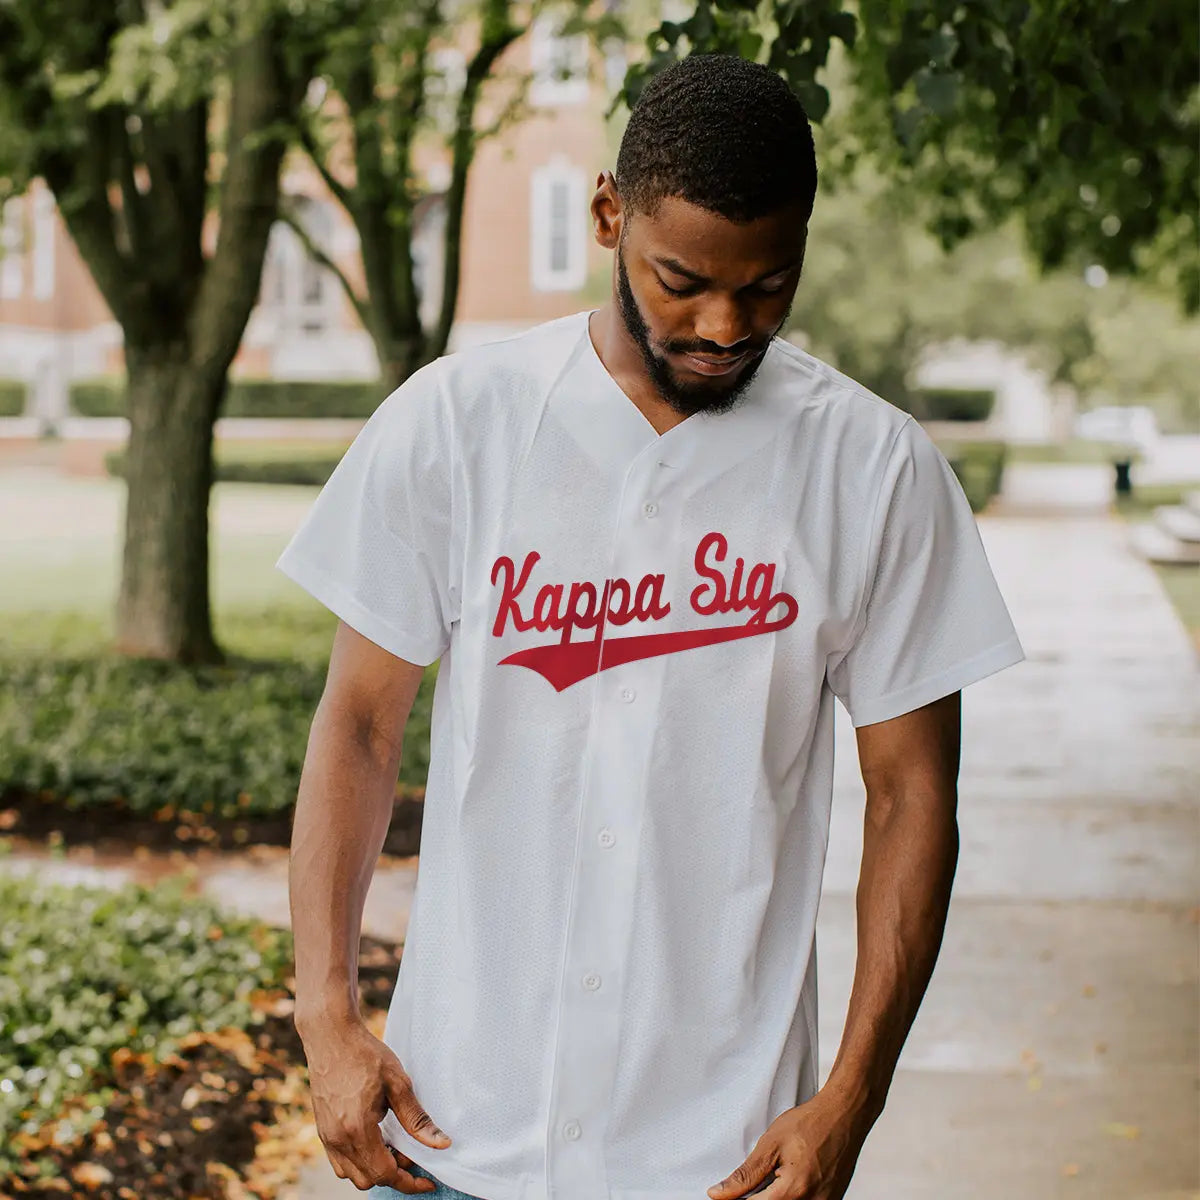 Kappa Sig Personalized White Mesh Baseball Jersey - Kappa Sigma Official Store